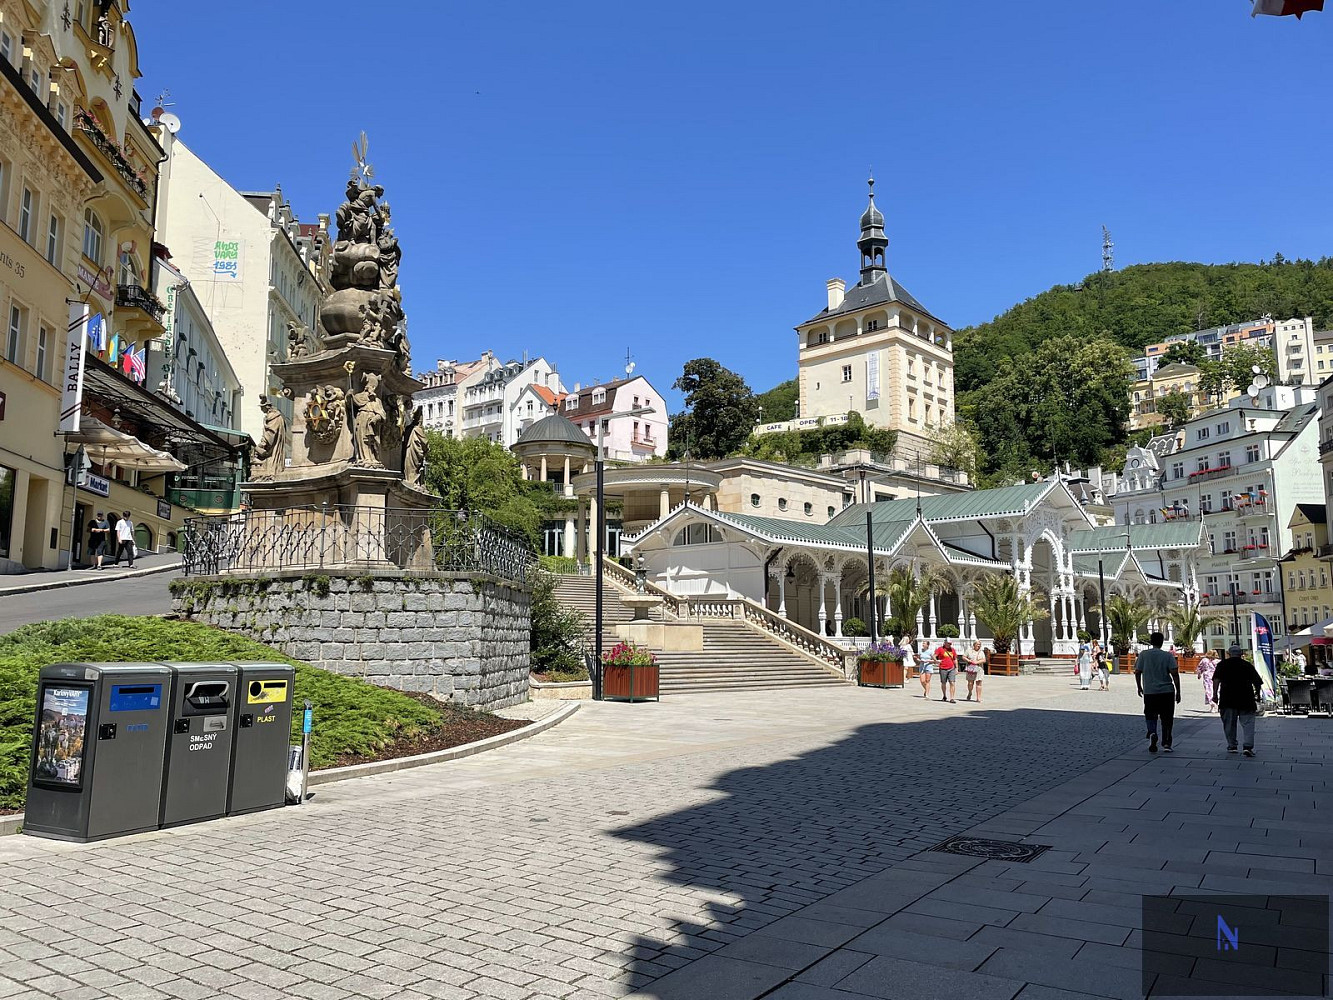 Tržiště, Karlovy Vary